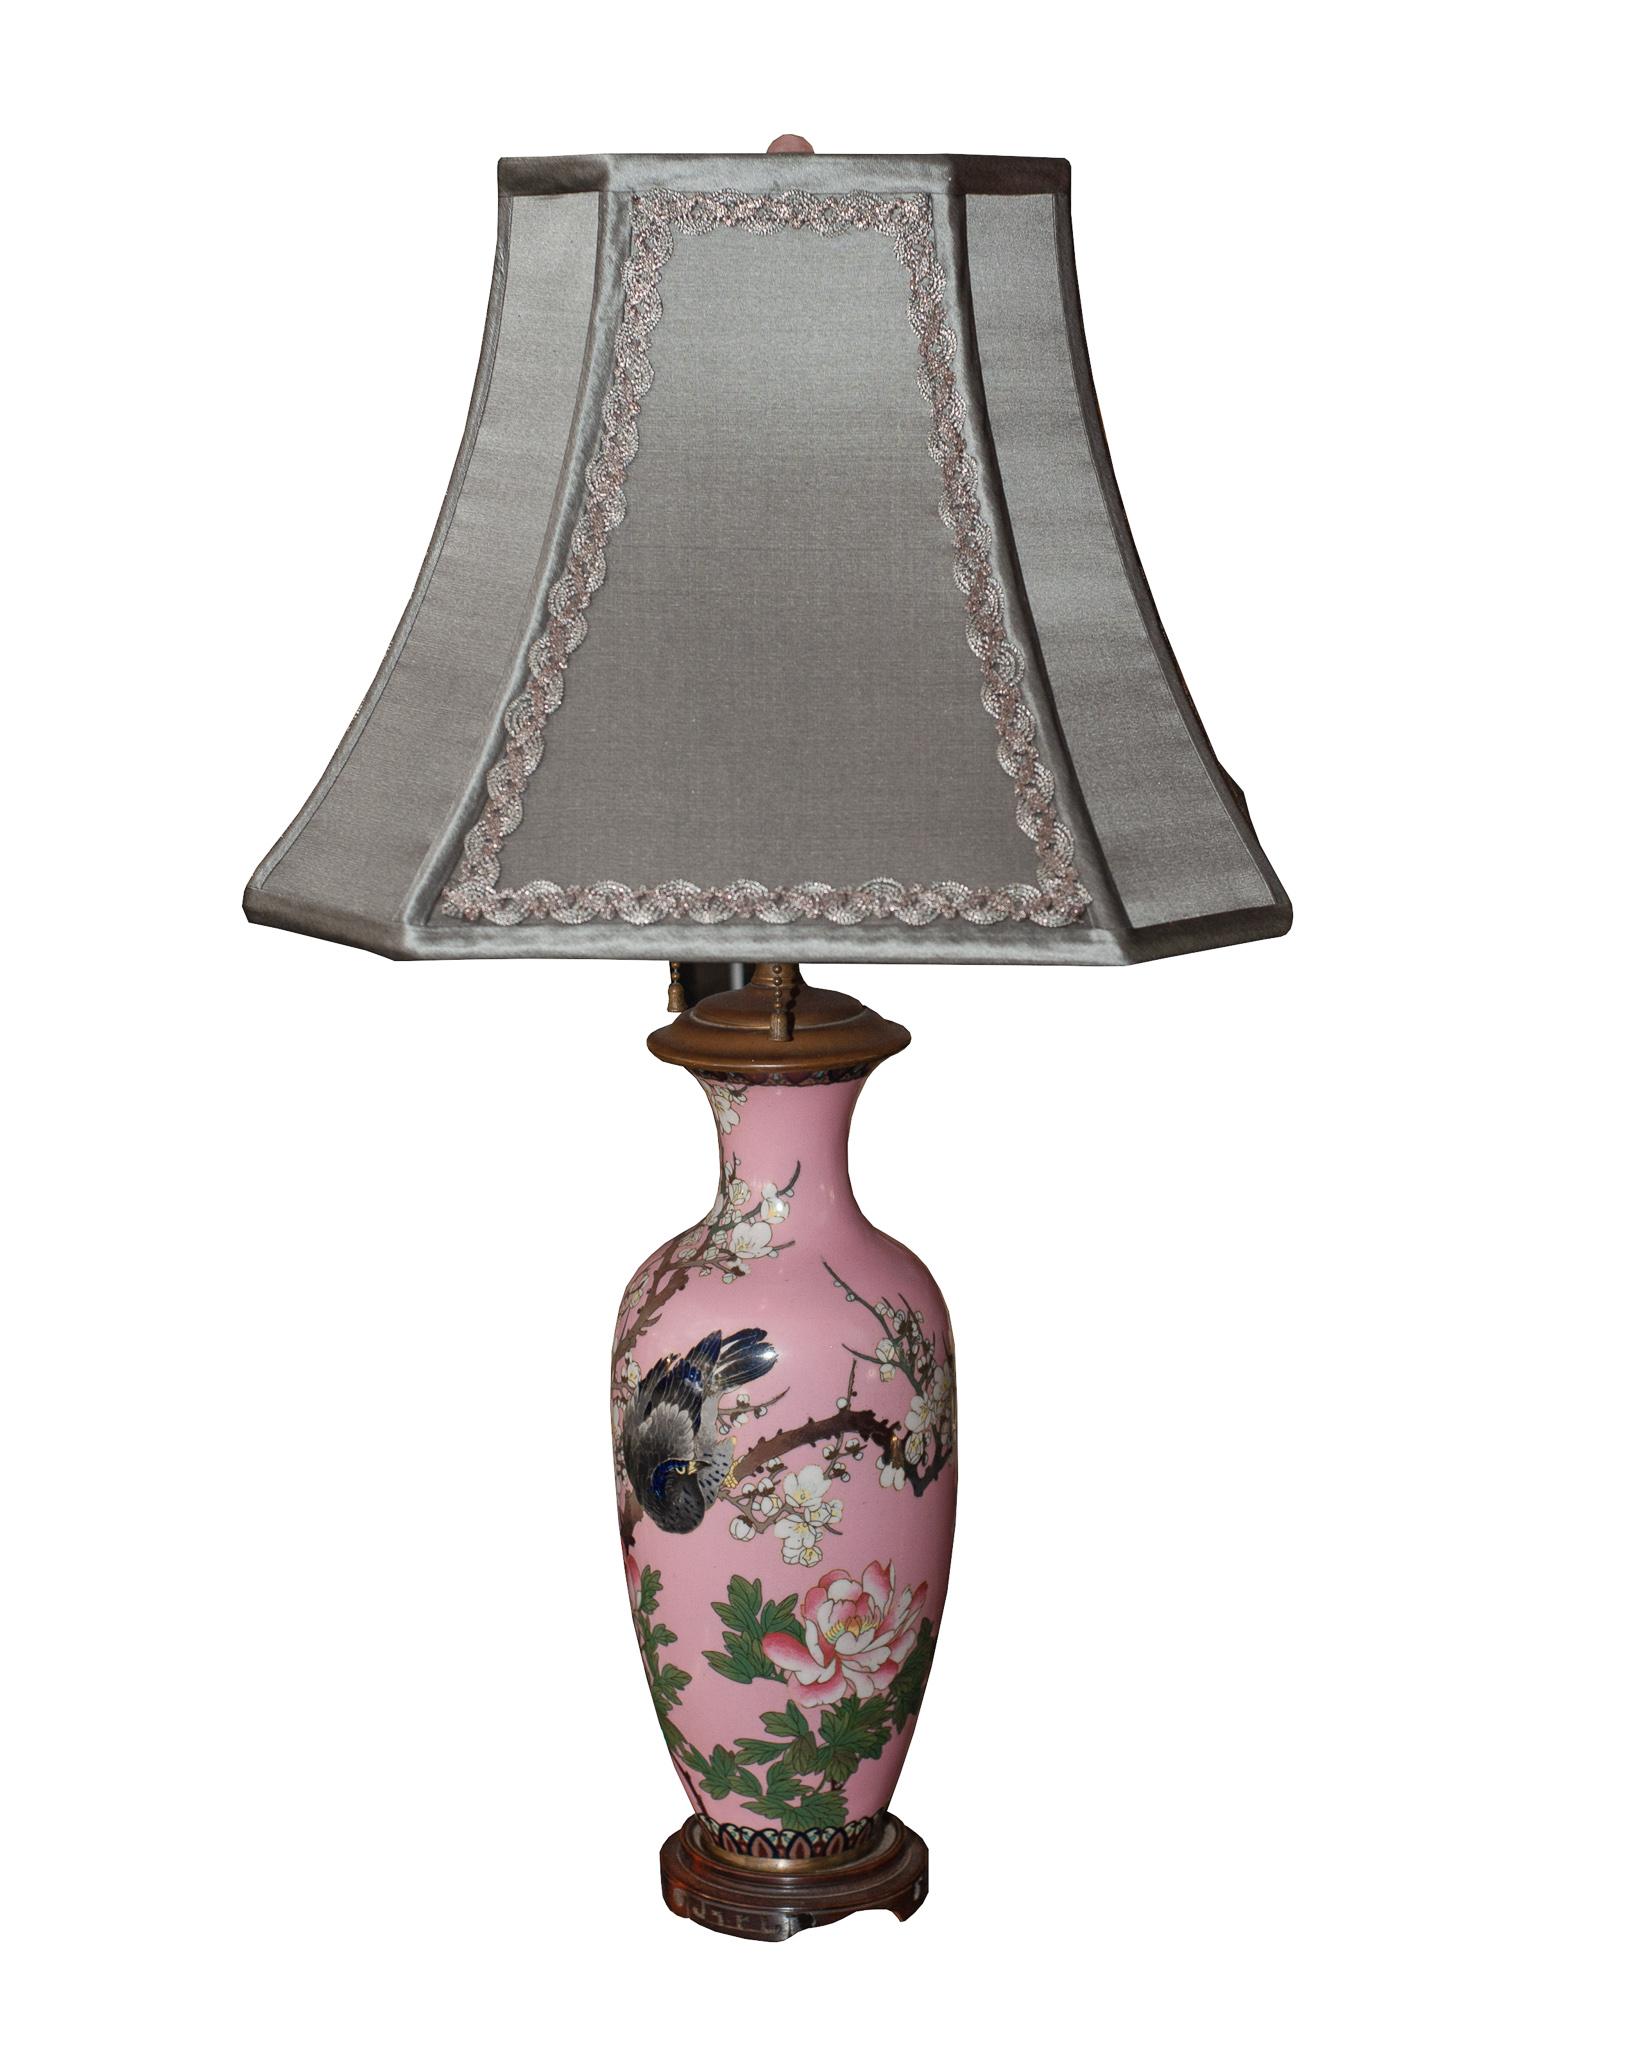 Cette paire de lampes anciennes en porcelaine japonaise est extrêmement rare et précieuse, non seulement pour sa qualité artistique, mais aussi pour sa magnifique couleur rose peu commune. La poterie et la porcelaine sont l'une des plus anciennes